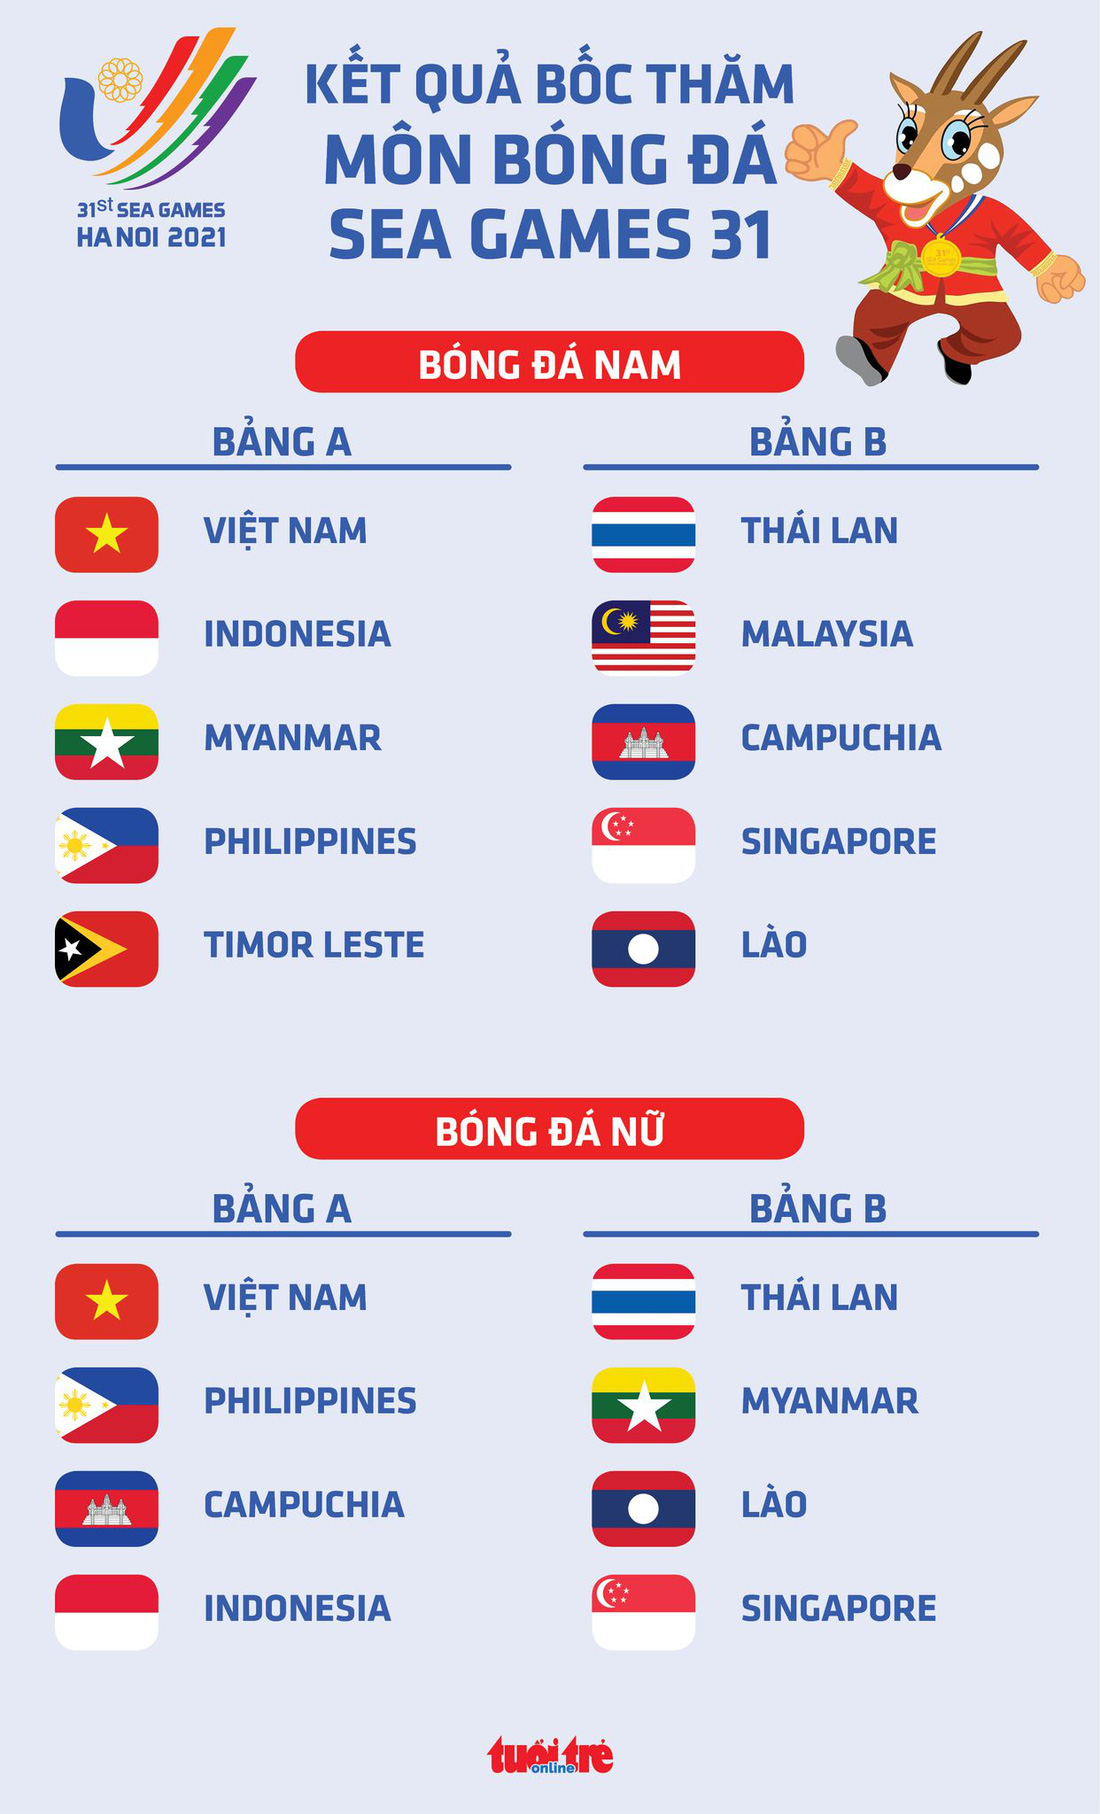 U23 Việt Nam cùng bảng với Indonesia, Myanmar và Philippines ở SEA Games 31 - Ảnh 1.